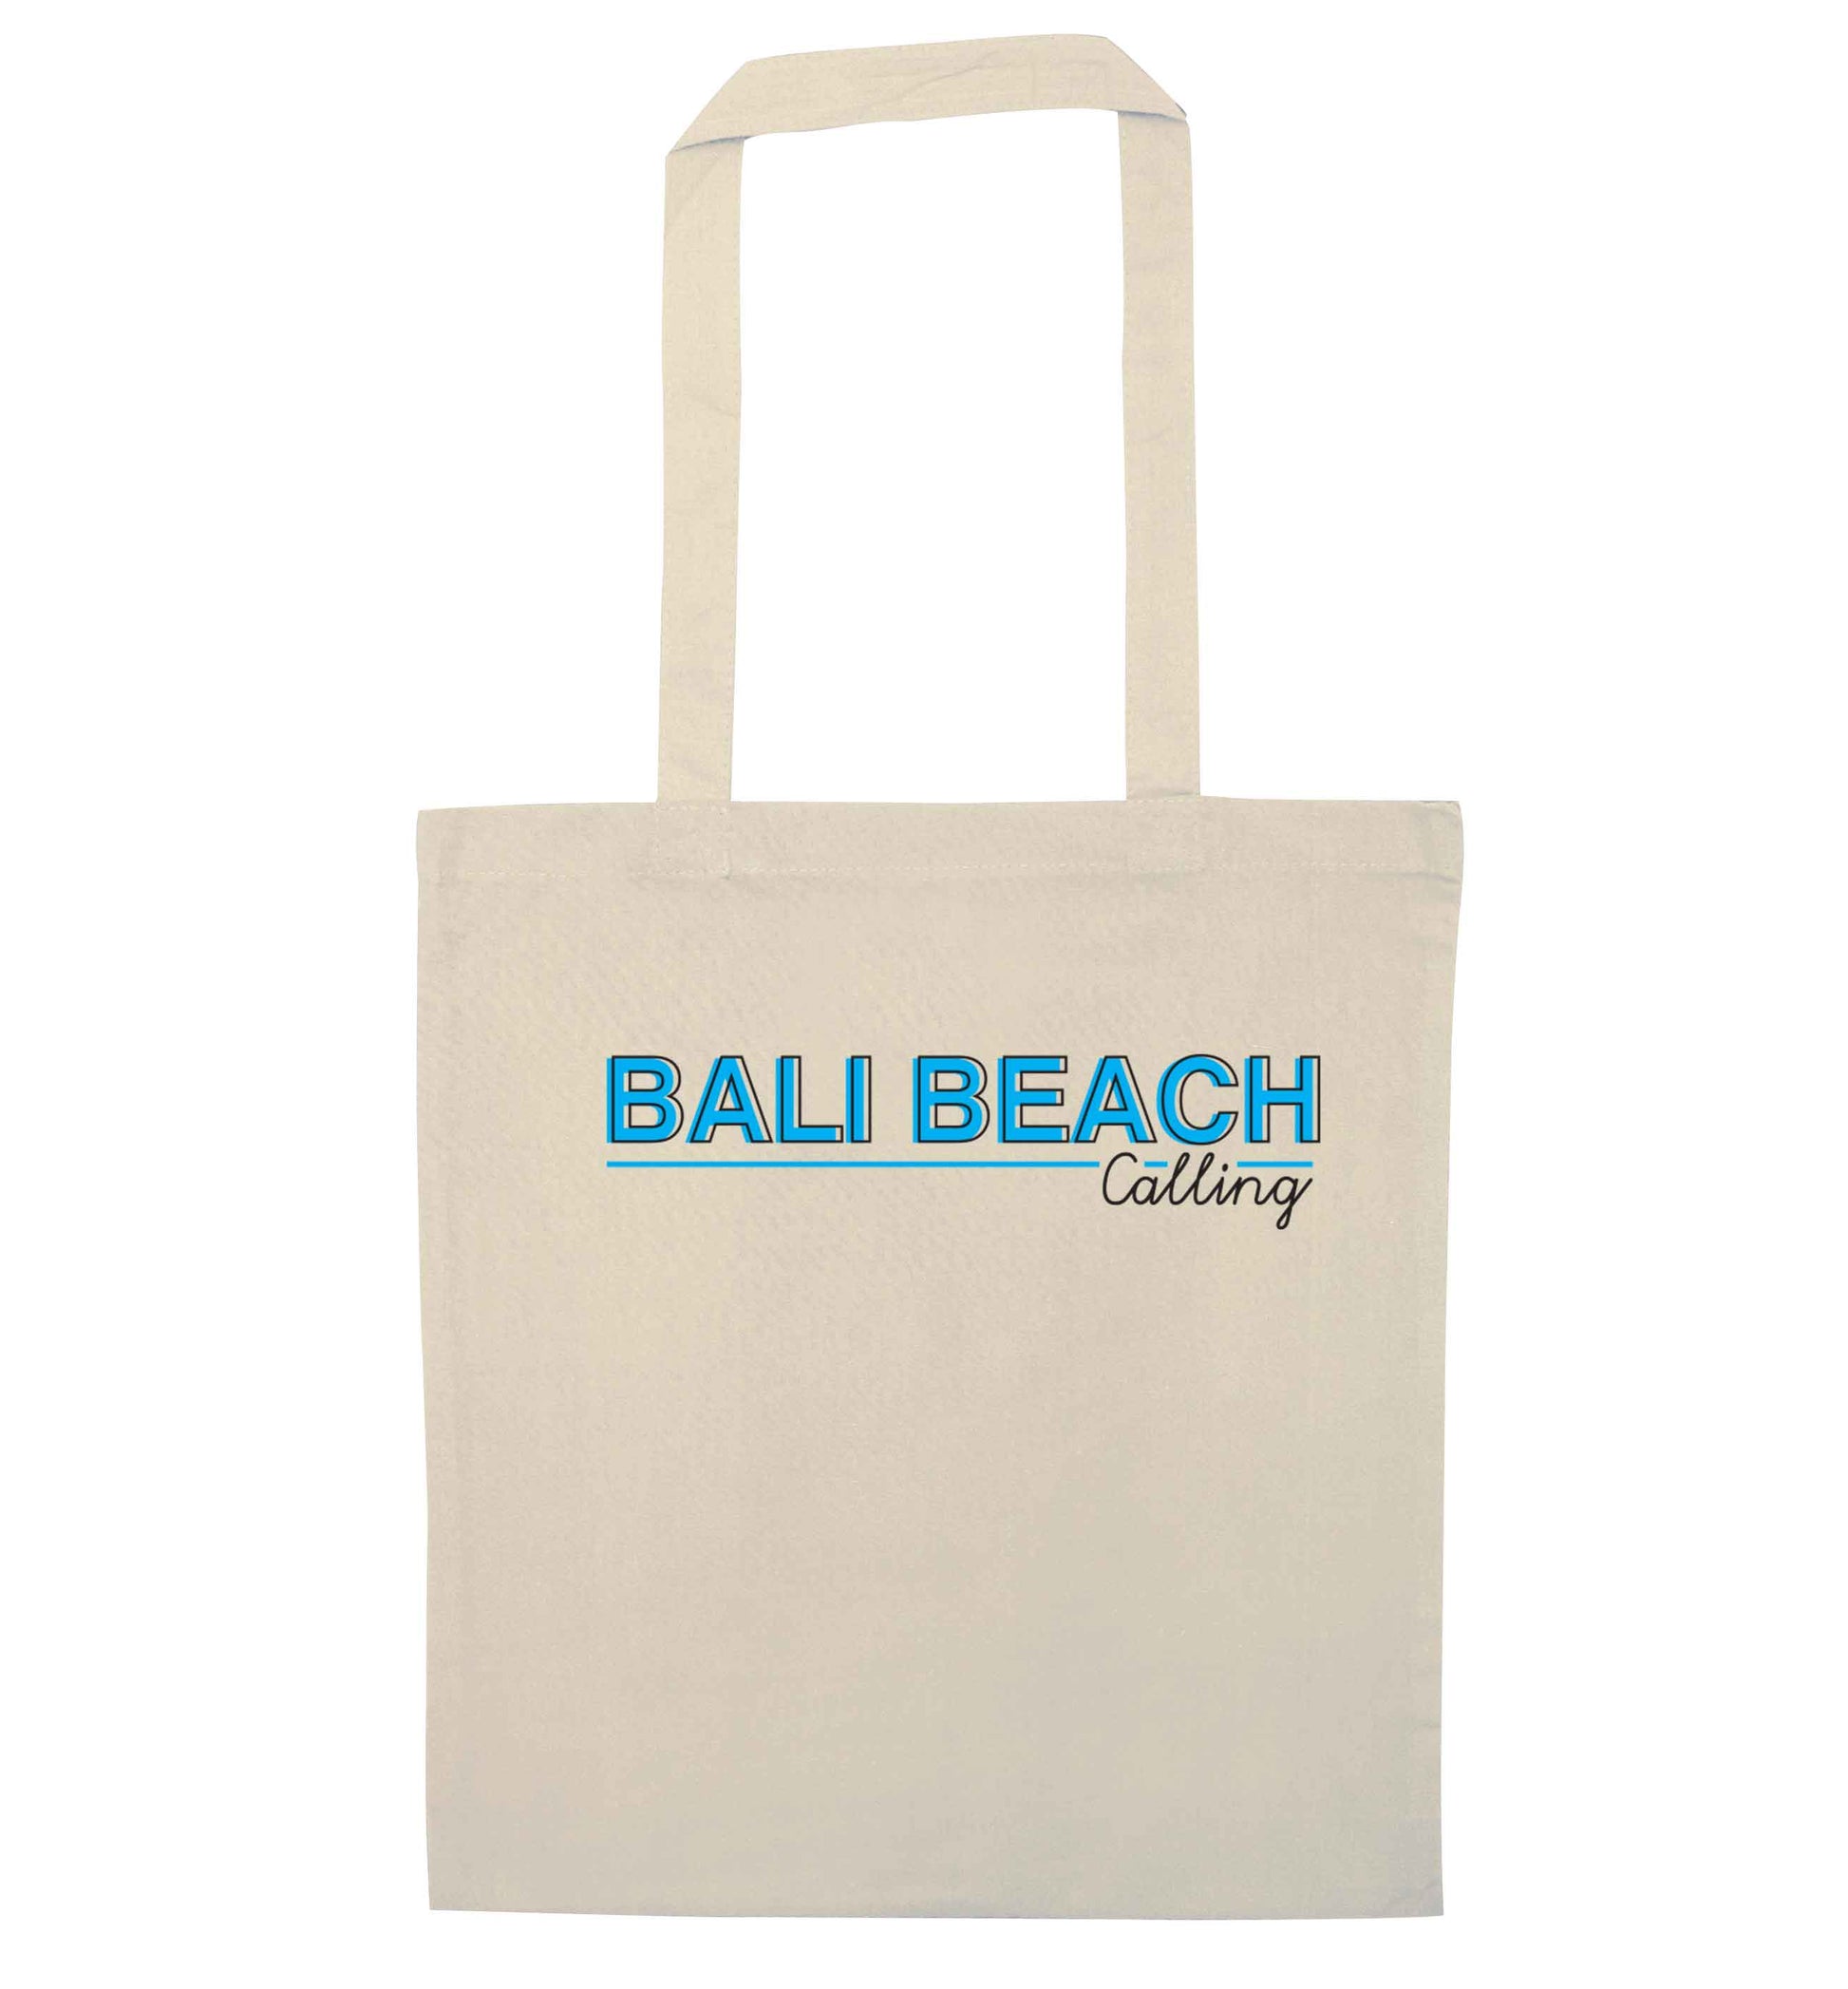 Bali beach calling natural tote bag